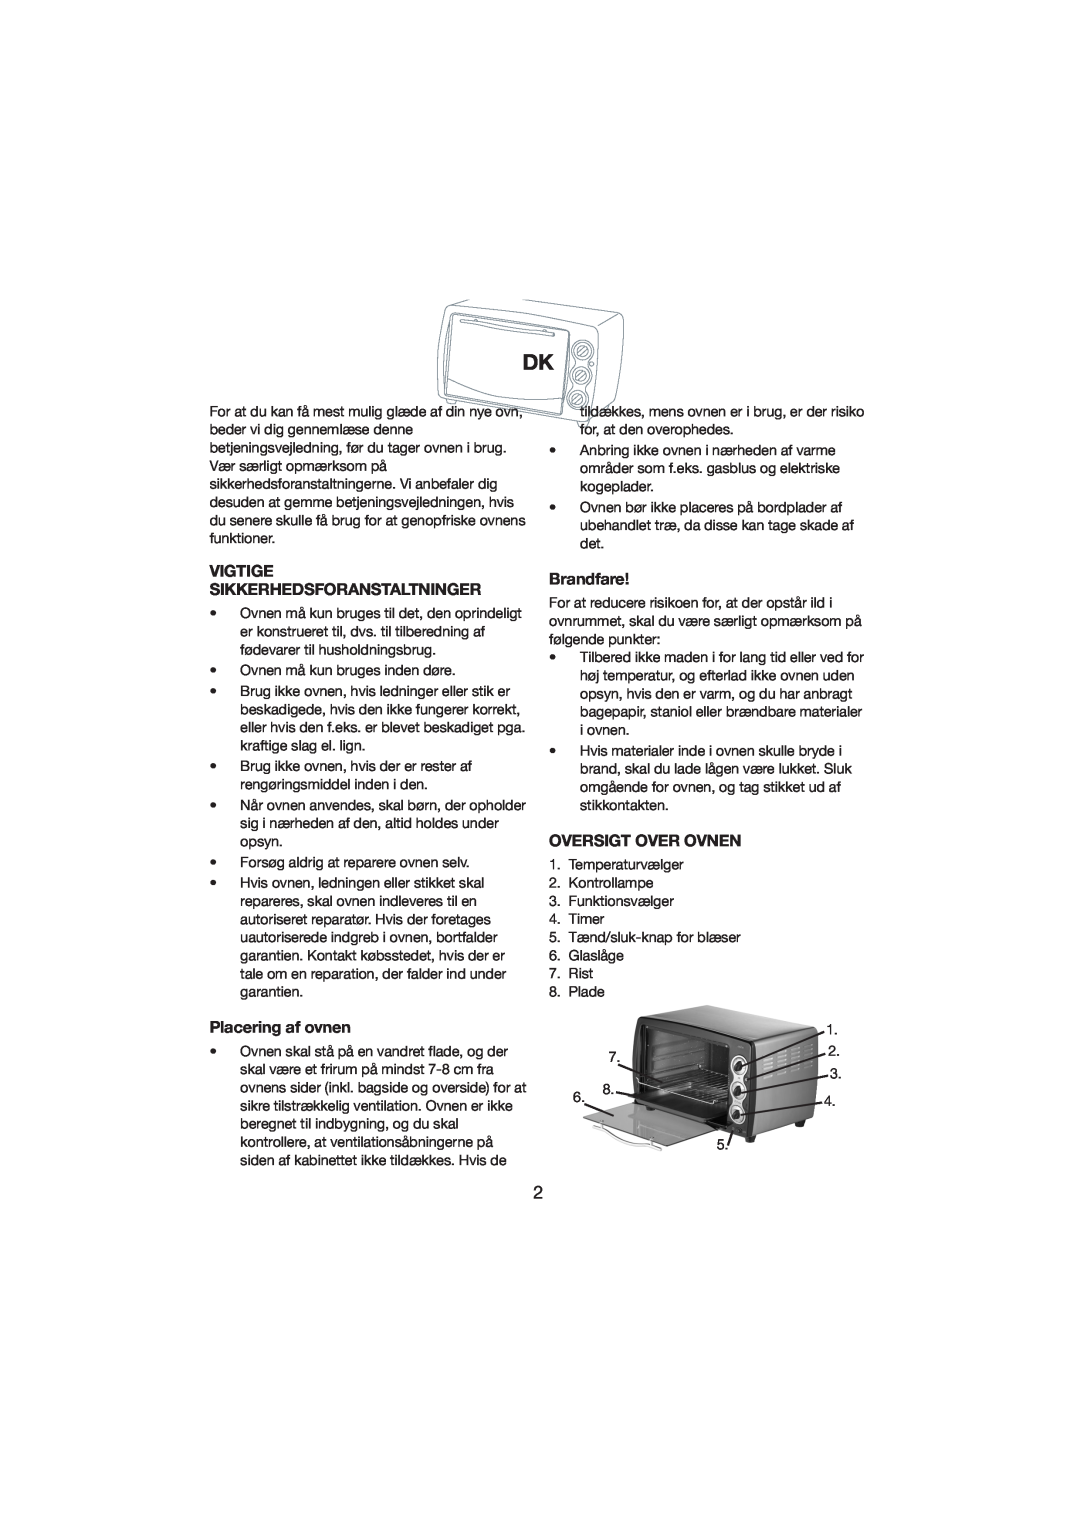 Melissa 251-003/004 manual Vigtige Sikkerhedsforanstaltninger, Placering af ovnen, Brandfare, Oversigt Over Ovnen 